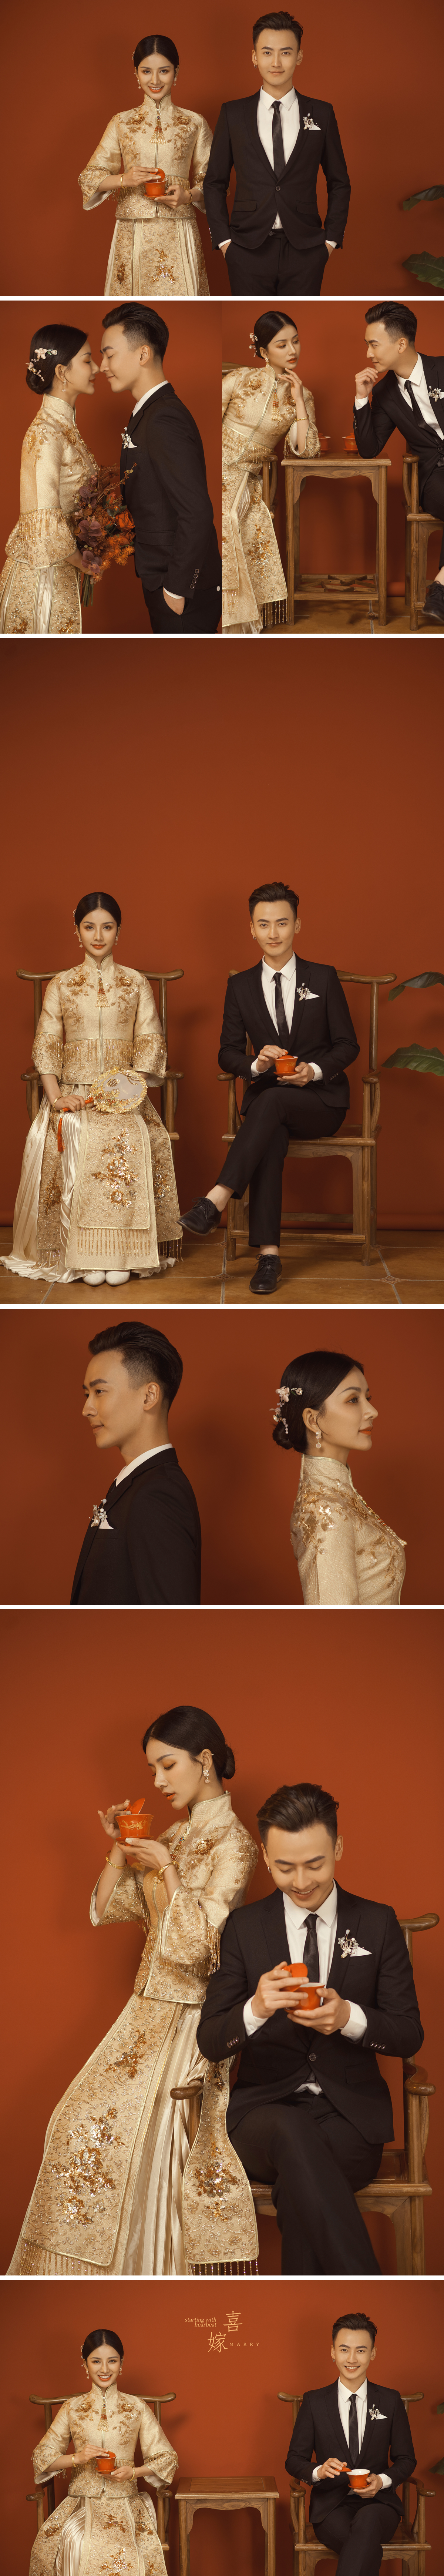 【中式系列】自由组合婚纱照 3999起 在家选片